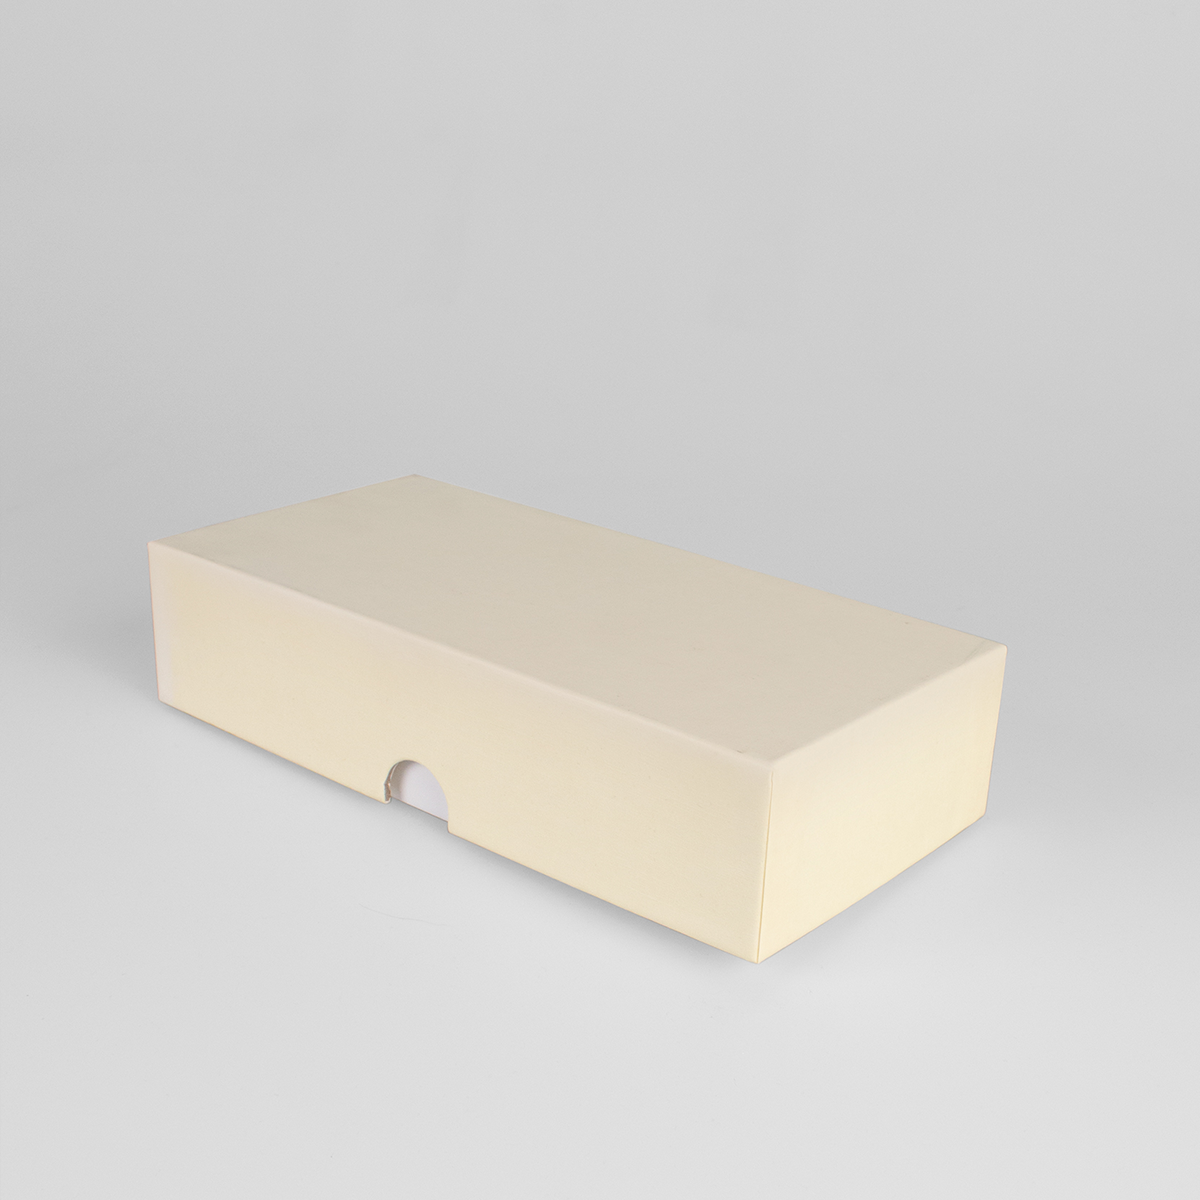 Подарочная коробка крышка-дно, 21.5 x 10.5 x 5 см. "Радуга", бежевый, белый